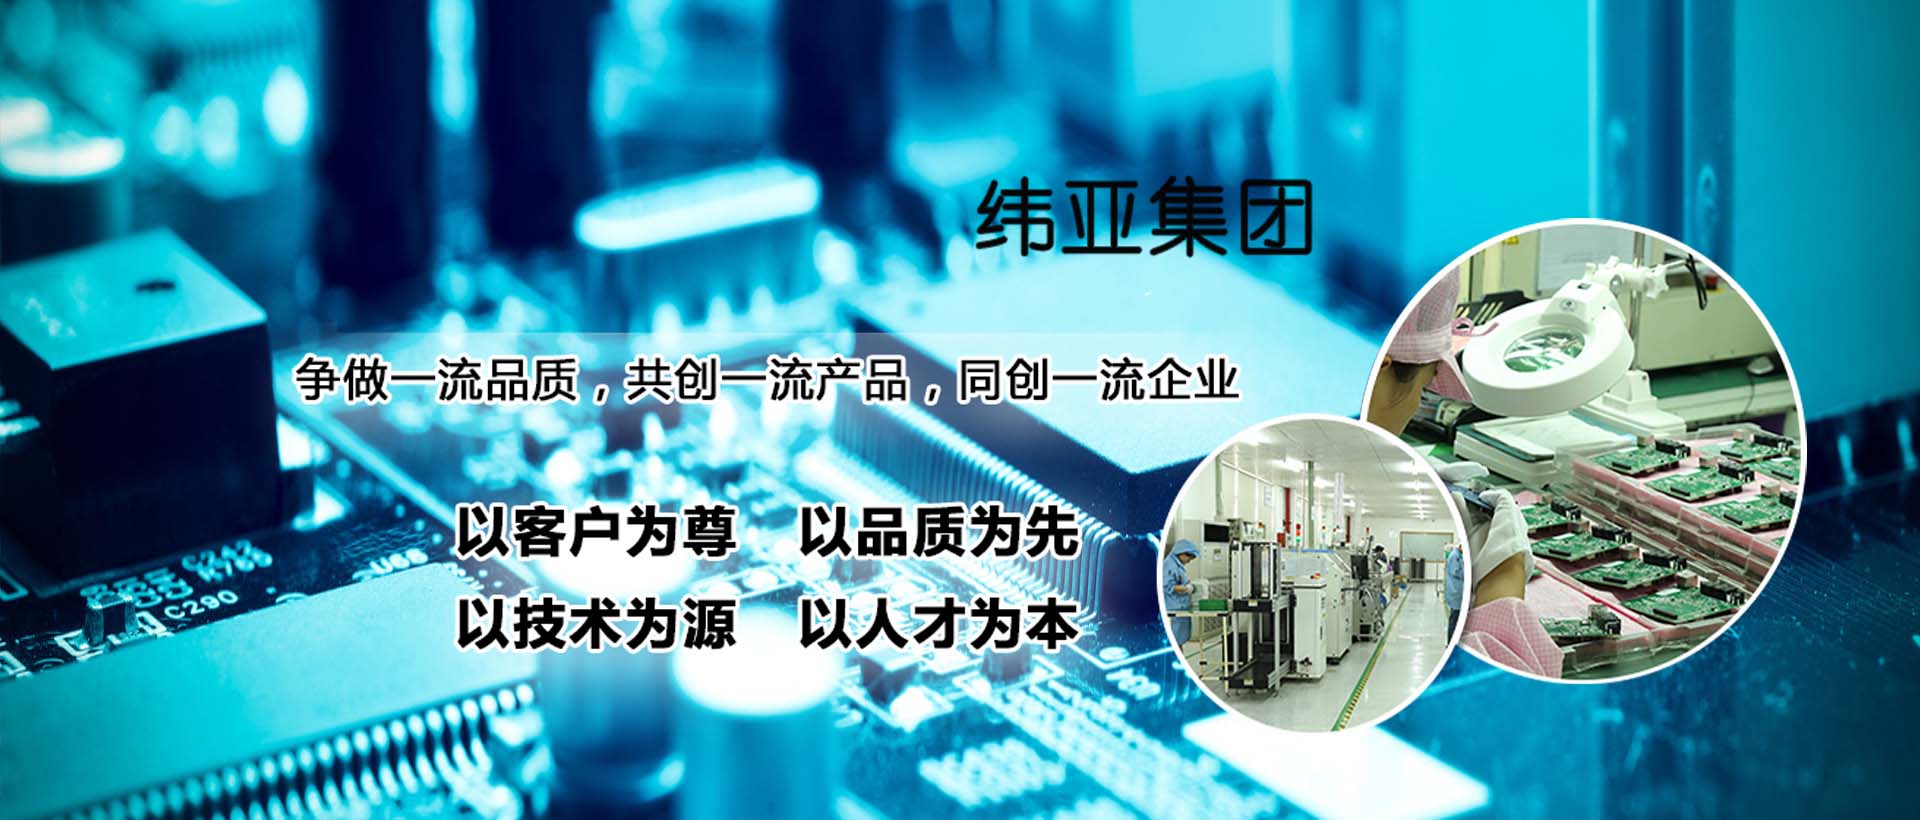 首頁大圖上海SMT加工、上海PCB設計加工,上海SMT加工、上海PCB設計加工